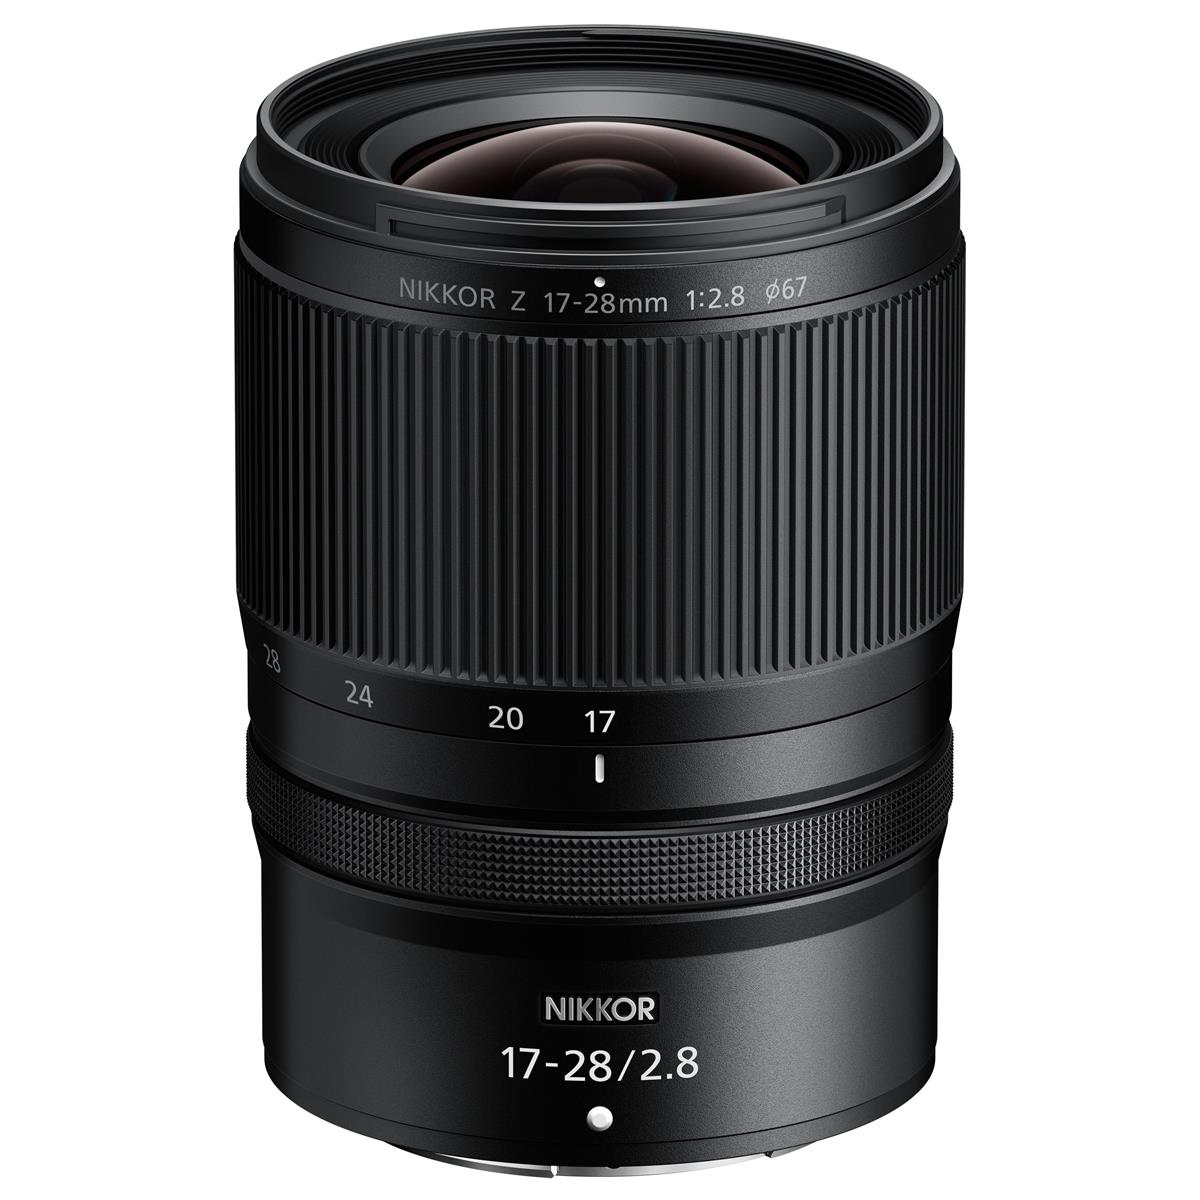 Nikon Z 17-28mm F2.8 Lens